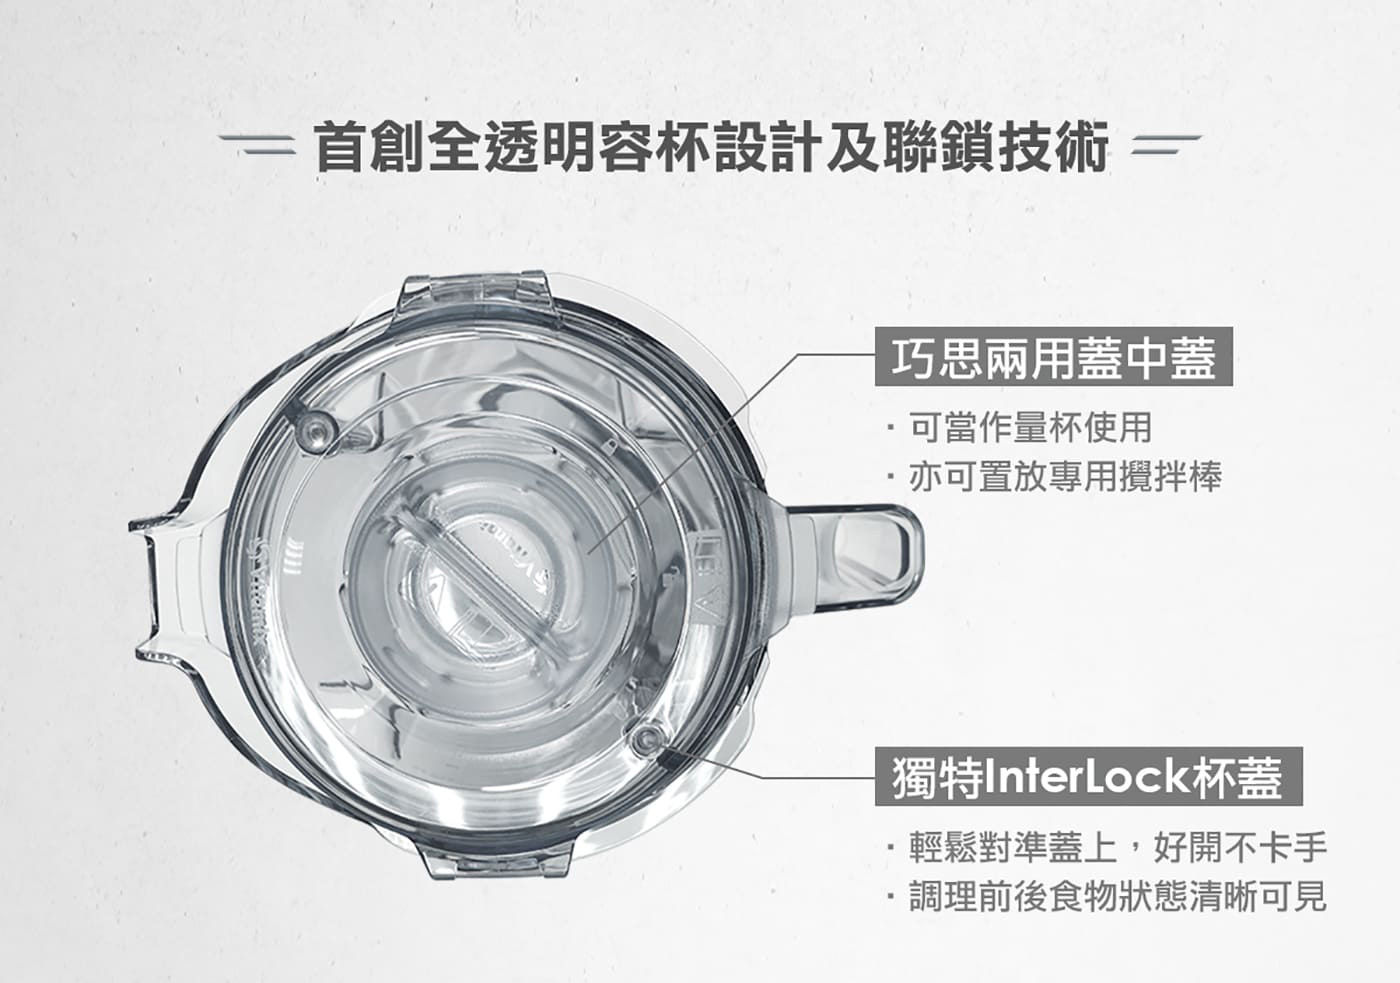 Vitamix 超跑級調理機 巧思兩用蓋中蓋 獨特InterLock杯蓋